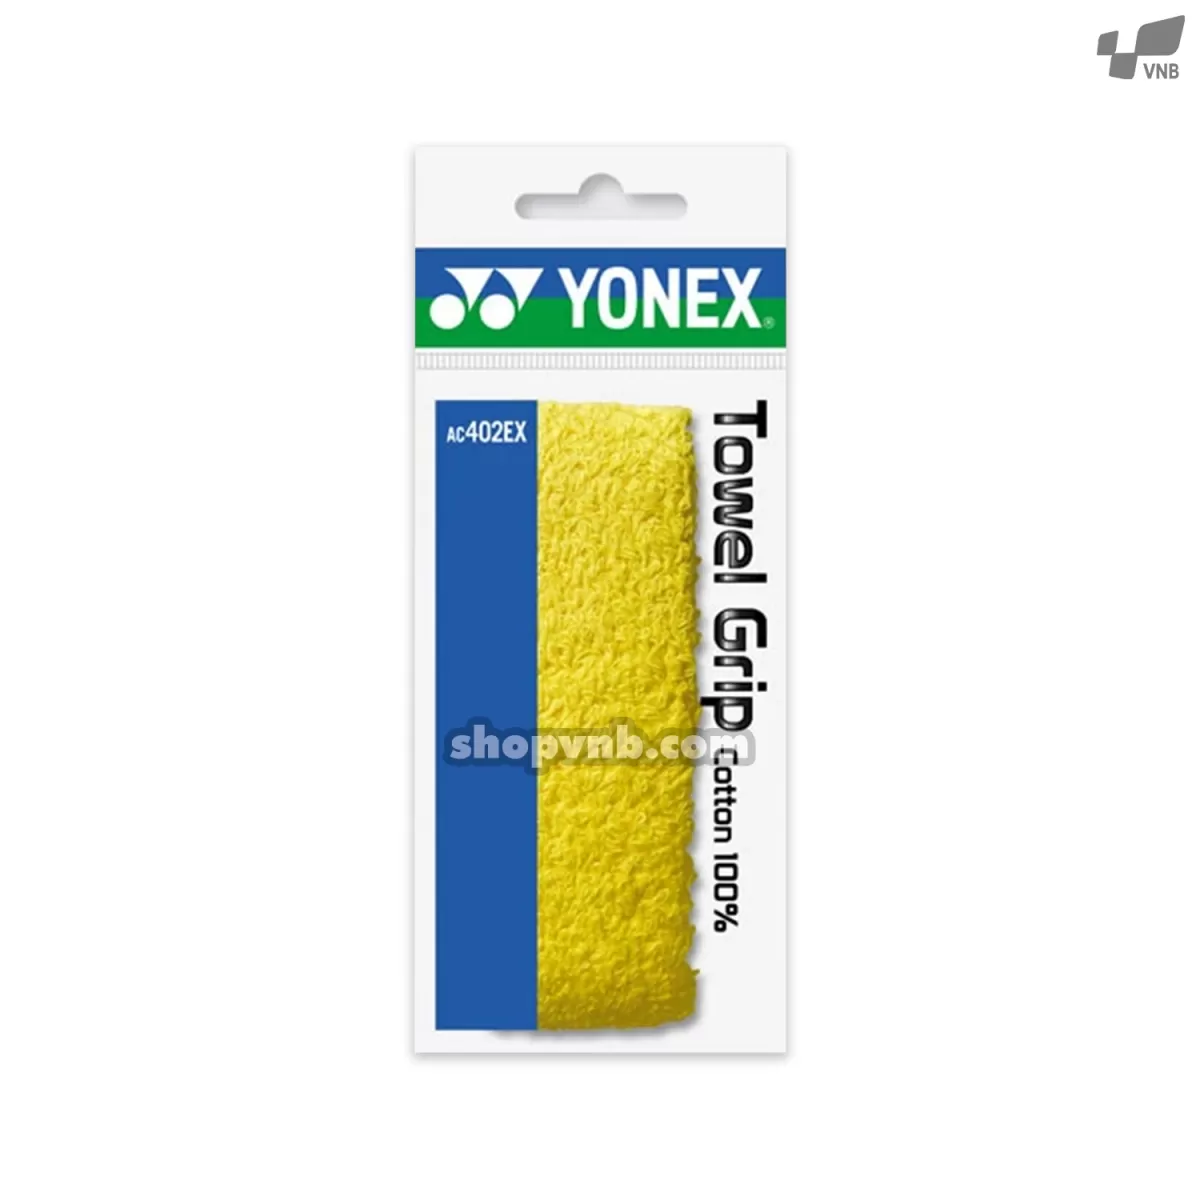 Quấn cán vợt cầu lông chống mồ hôi Yonex AC 402 EX (vải)